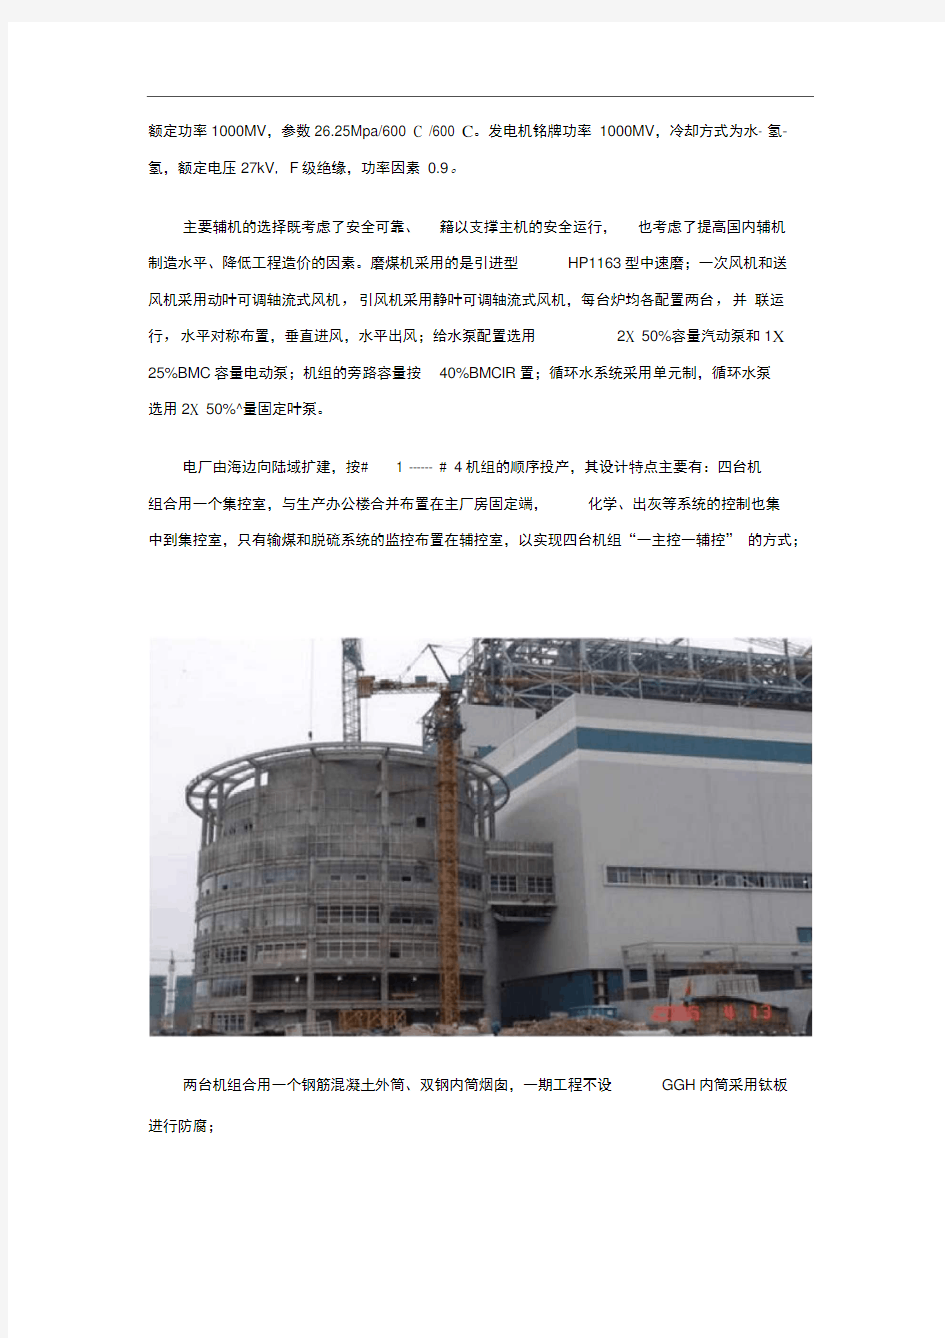 华能玉环电厂4×1000MW超超临界机组工程建设实践